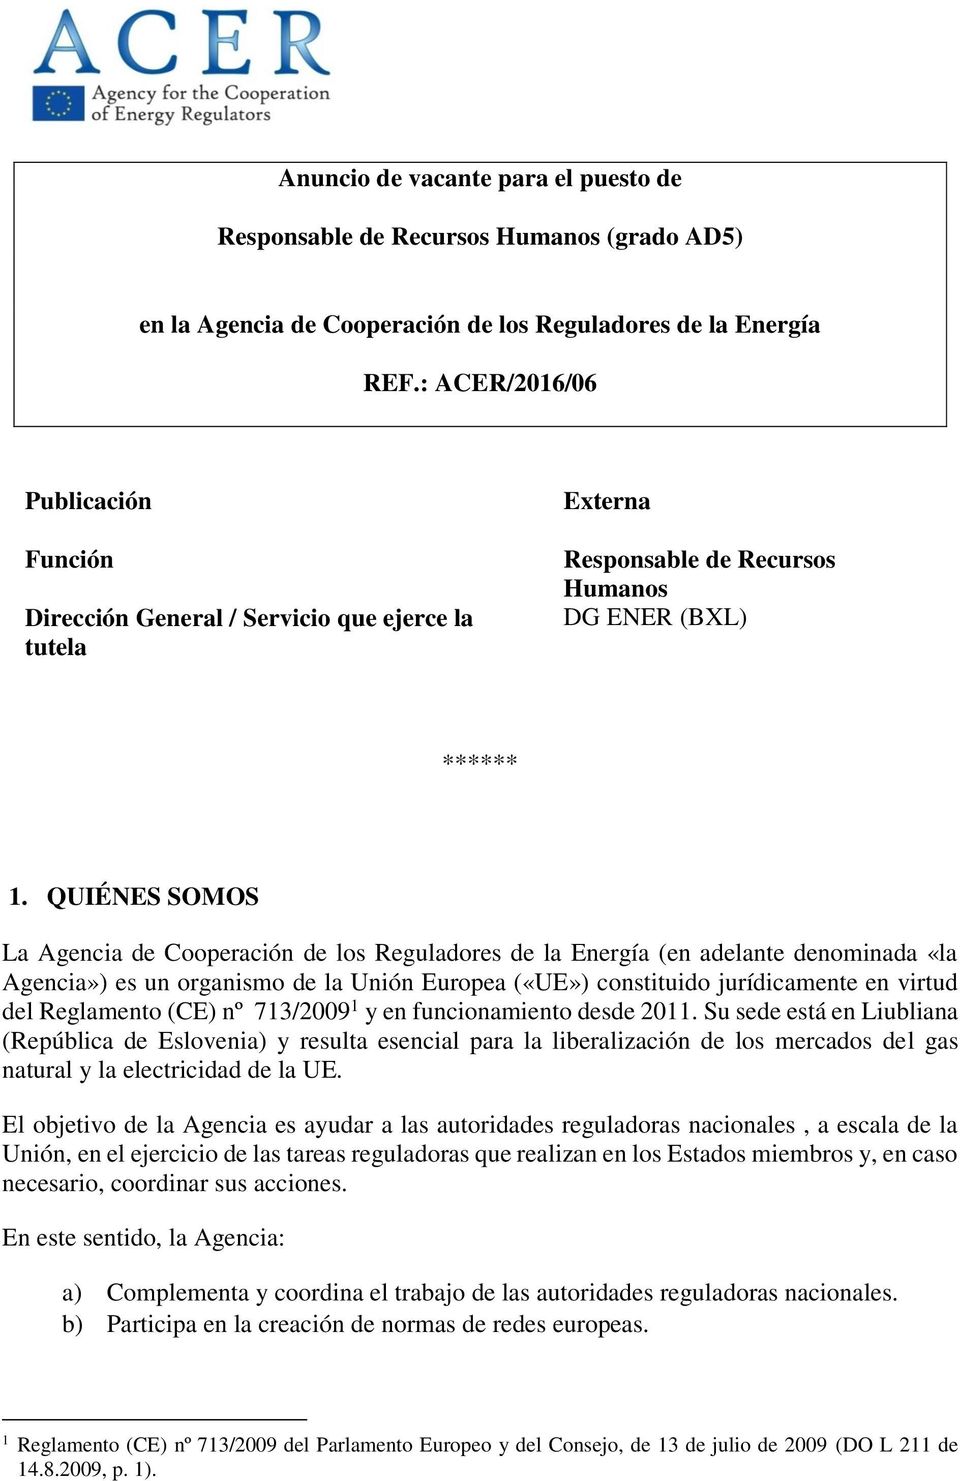 QUIÉNES SOMOS La Agencia de Cooperación de los Reguladores de la Energía (en adelante denominada «la Agencia») es un organismo de la Unión Europea («UE») constituido jurídicamente en virtud del